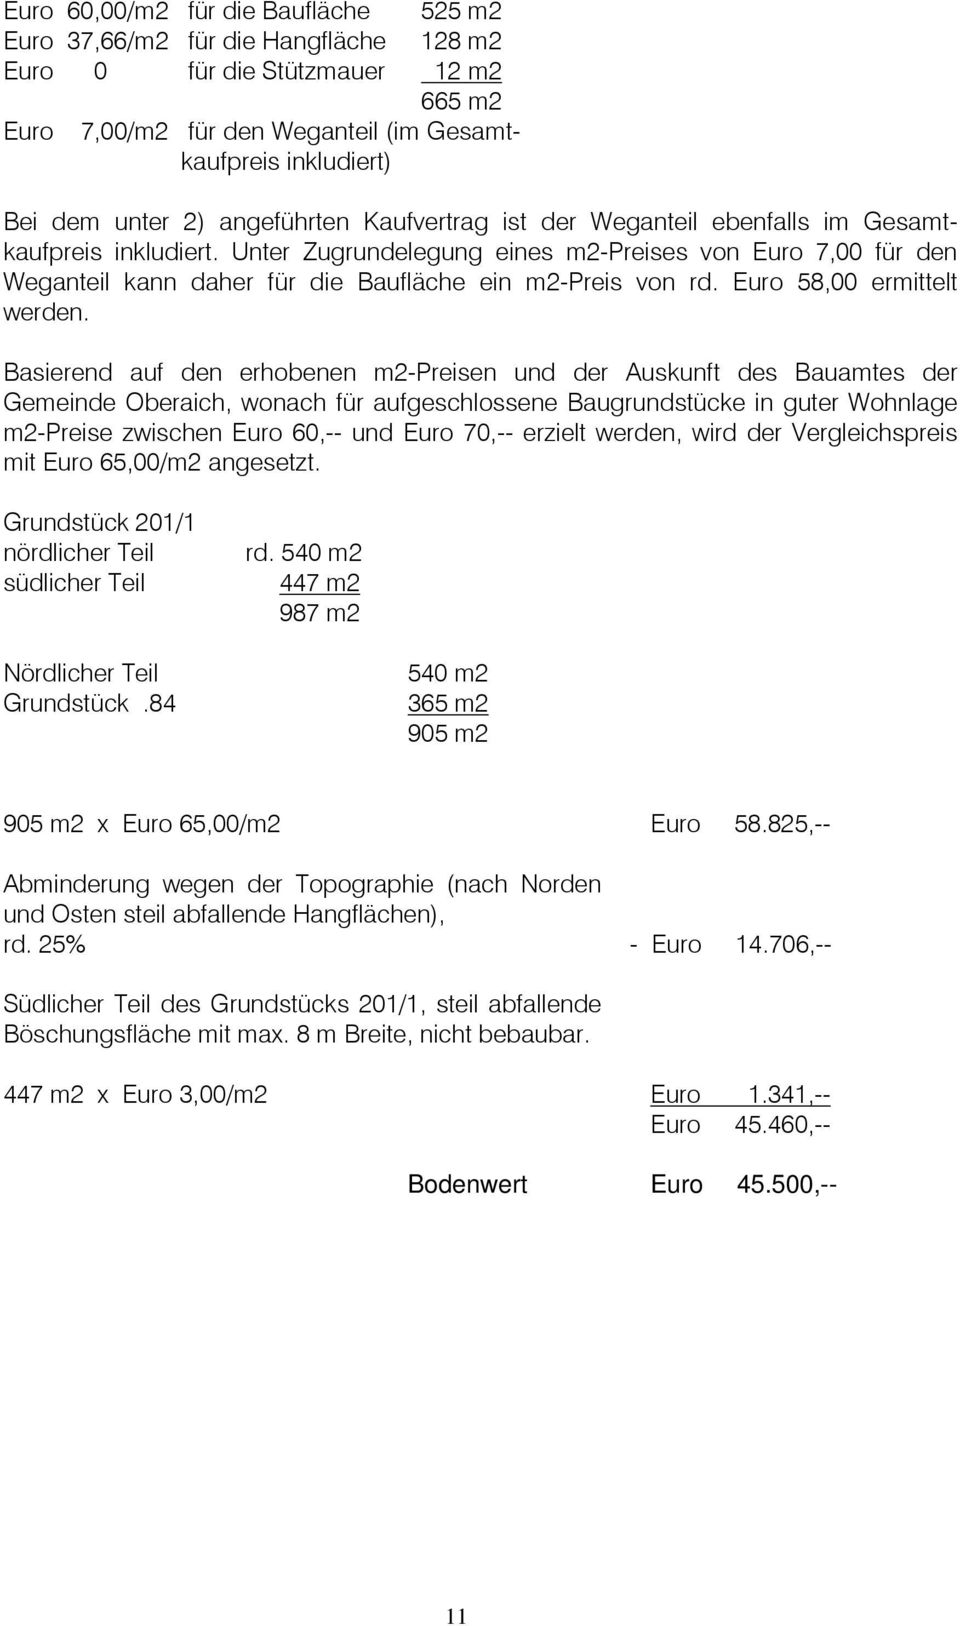 Unter Zugrundelegung eines m2-preises von Euro 7,00 für den Weganteil kann daher für die Baufläche ein m2-preis von rd. Euro 58,00 ermittelt werden.